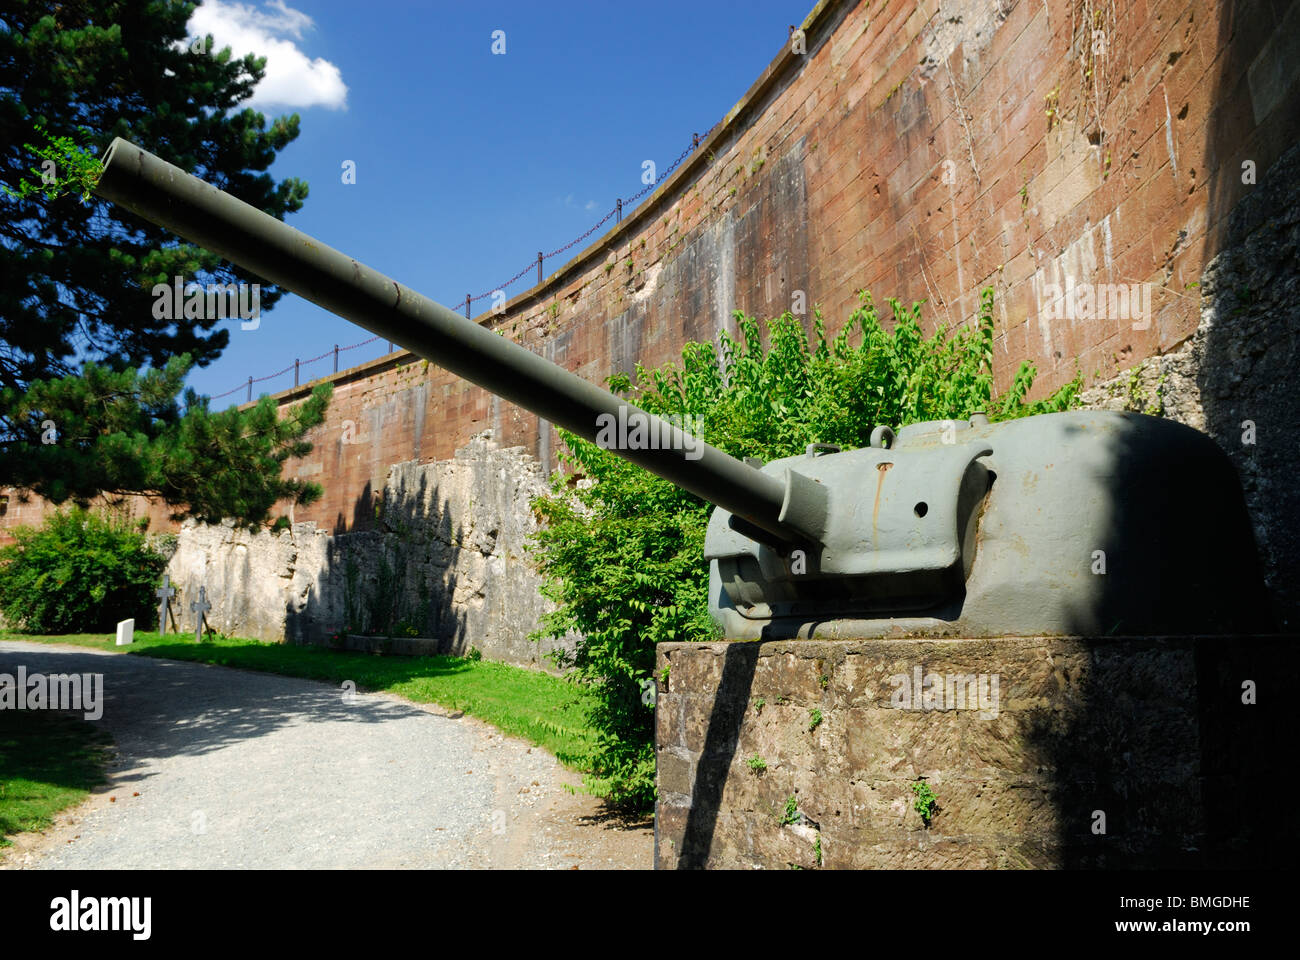 Alten WWII Gun und Vaubans Festung Wand in Belfort Zitadelle. Belfort Gebiet, Region Franche Comte, Frankreich Stockfoto